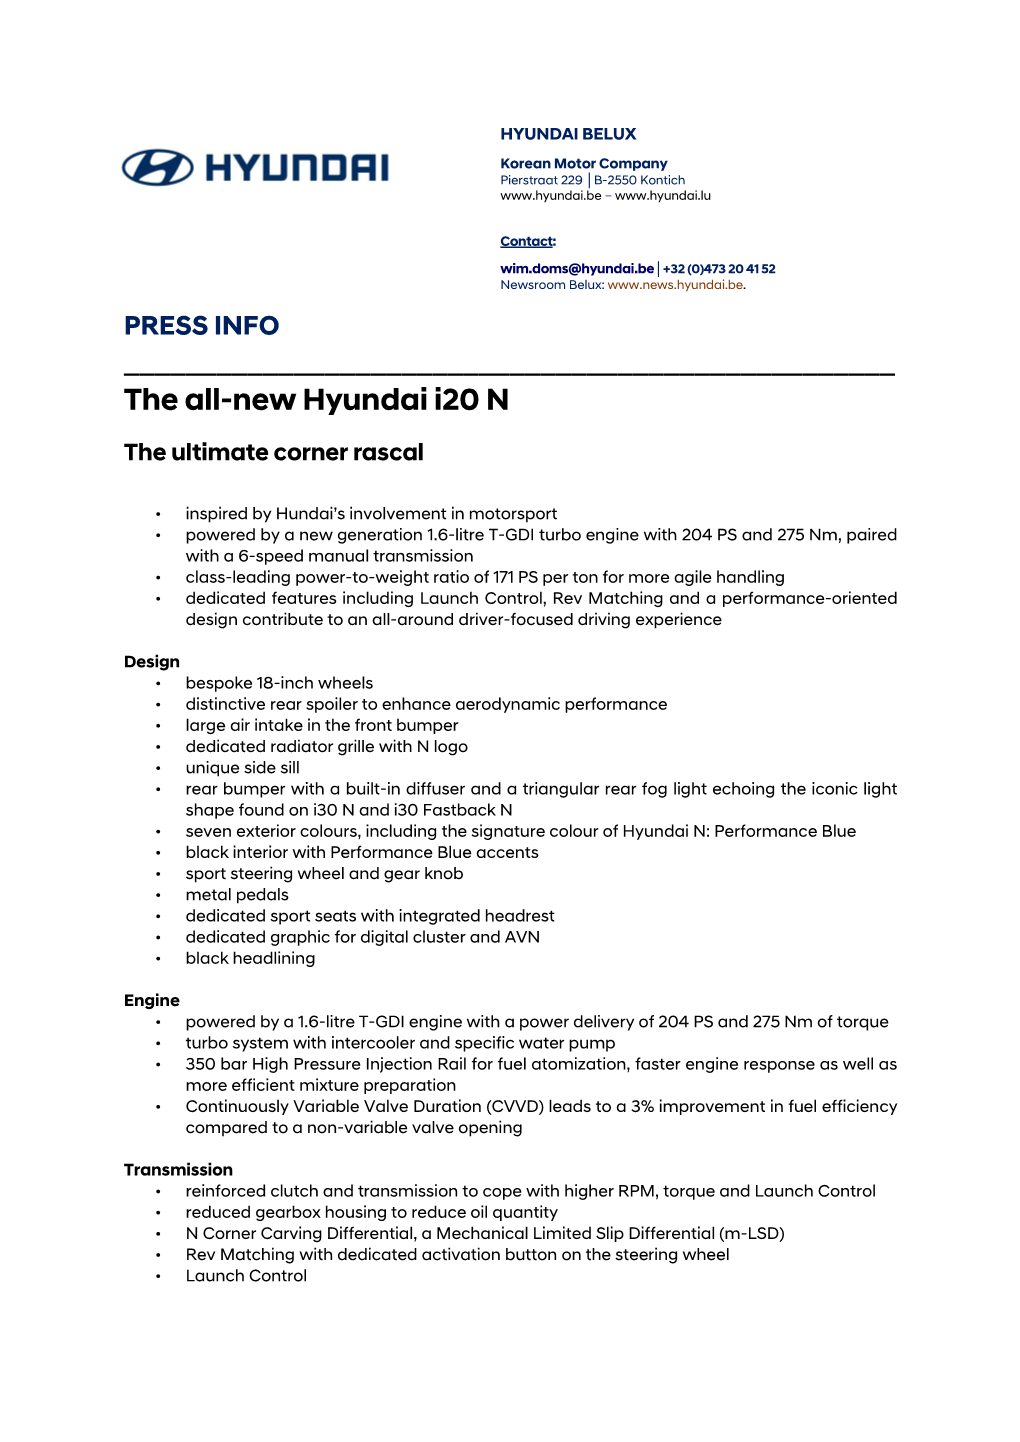 The All-New Hyundai I20 N